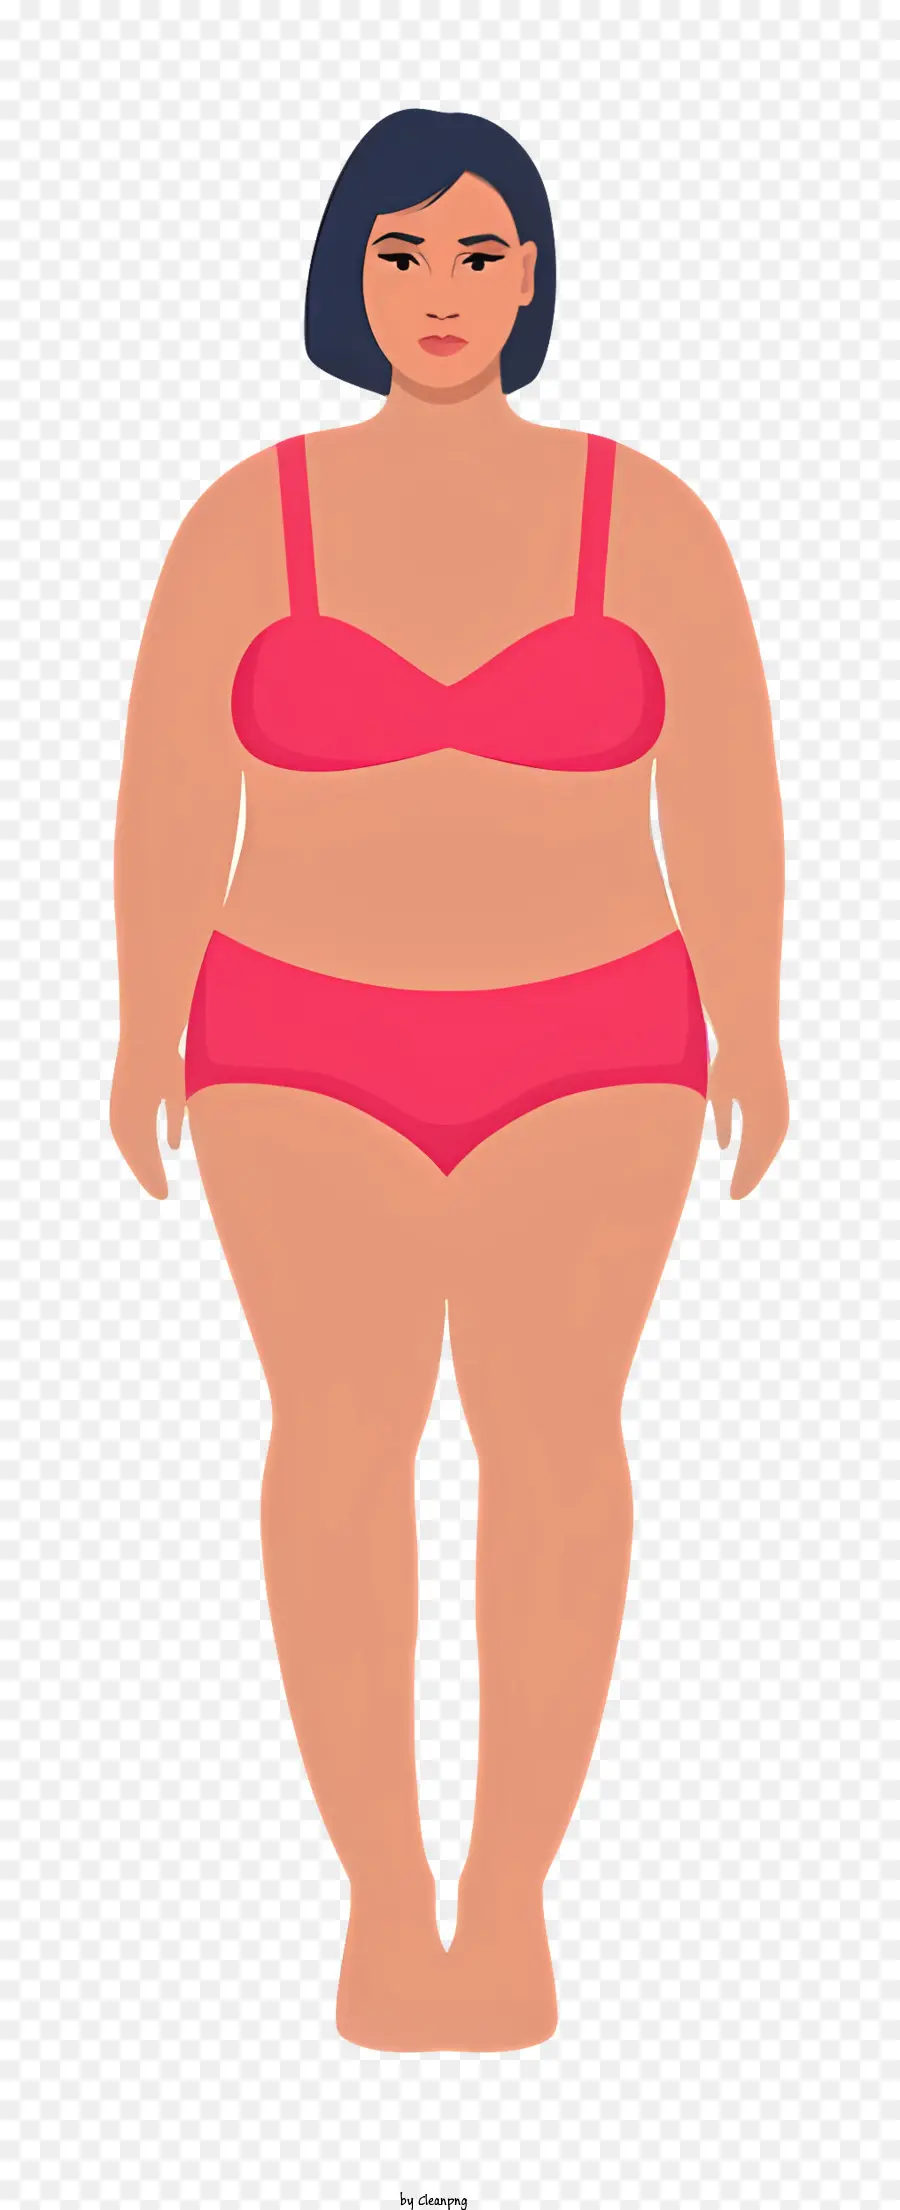 người phụ nữ cơ thể béo trong bộ bikini màu hồng bikini top top slim body - Minh họa vector cường điệu, lý tưởng hóa của người phụ nữ trong bộ bikini